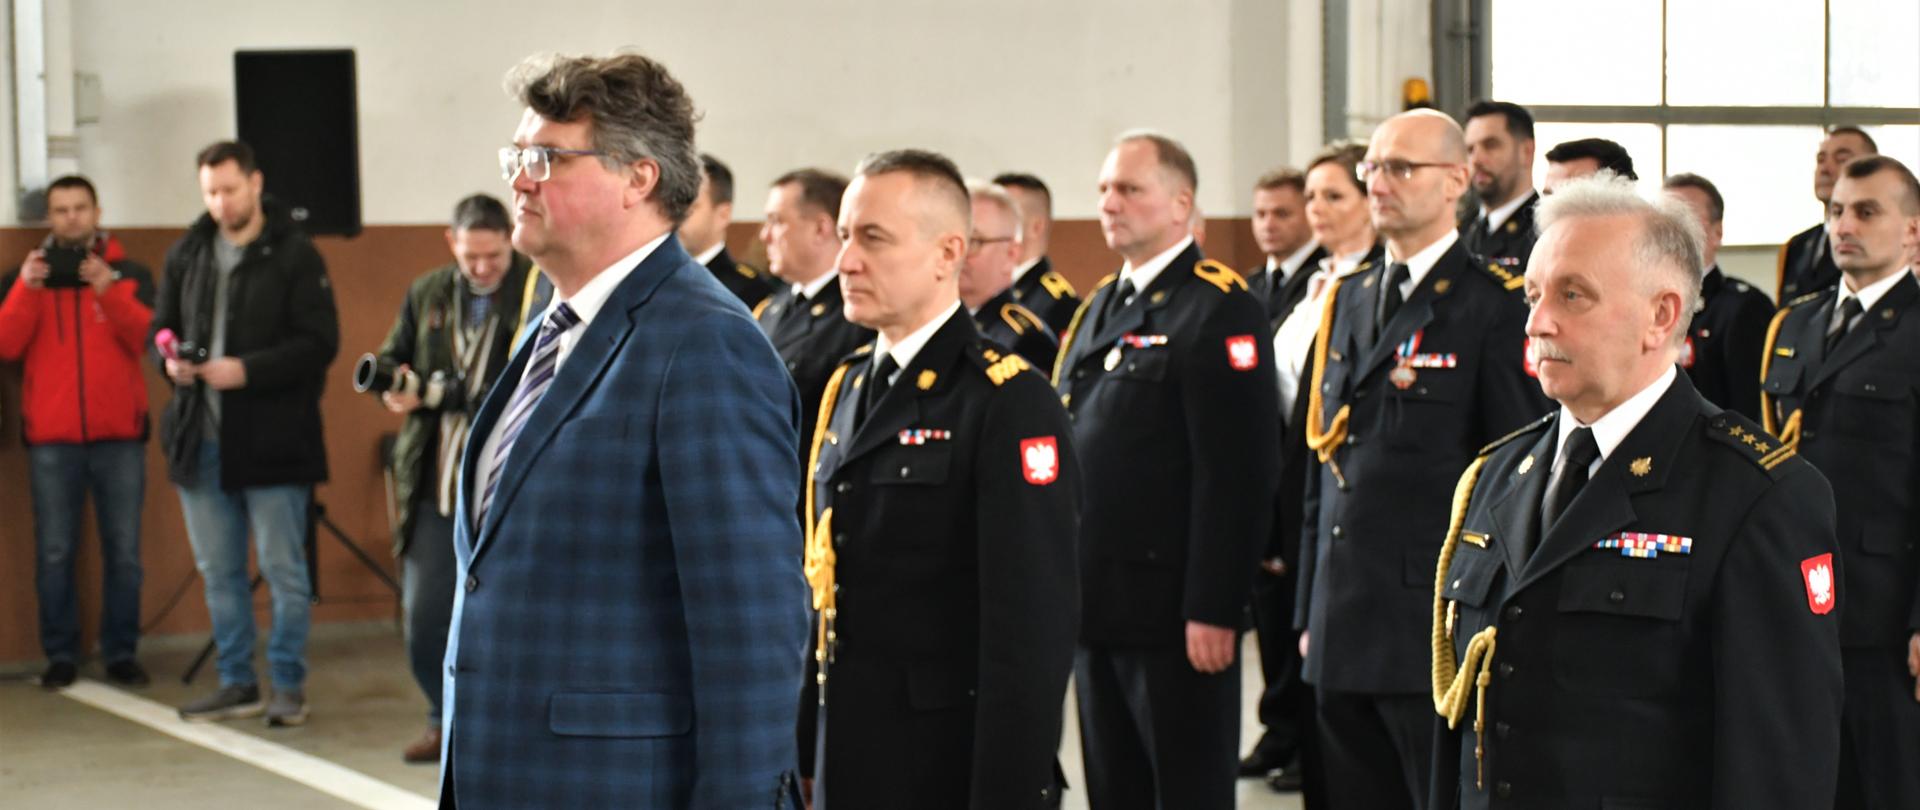 Na zdjęciu stoją na baczność strażacy w mundurach wyjściowych, z przodu przed nimi stoi Wiceminister Spraw Wewnętrznych i Administracji Pan Maciej Wąsik